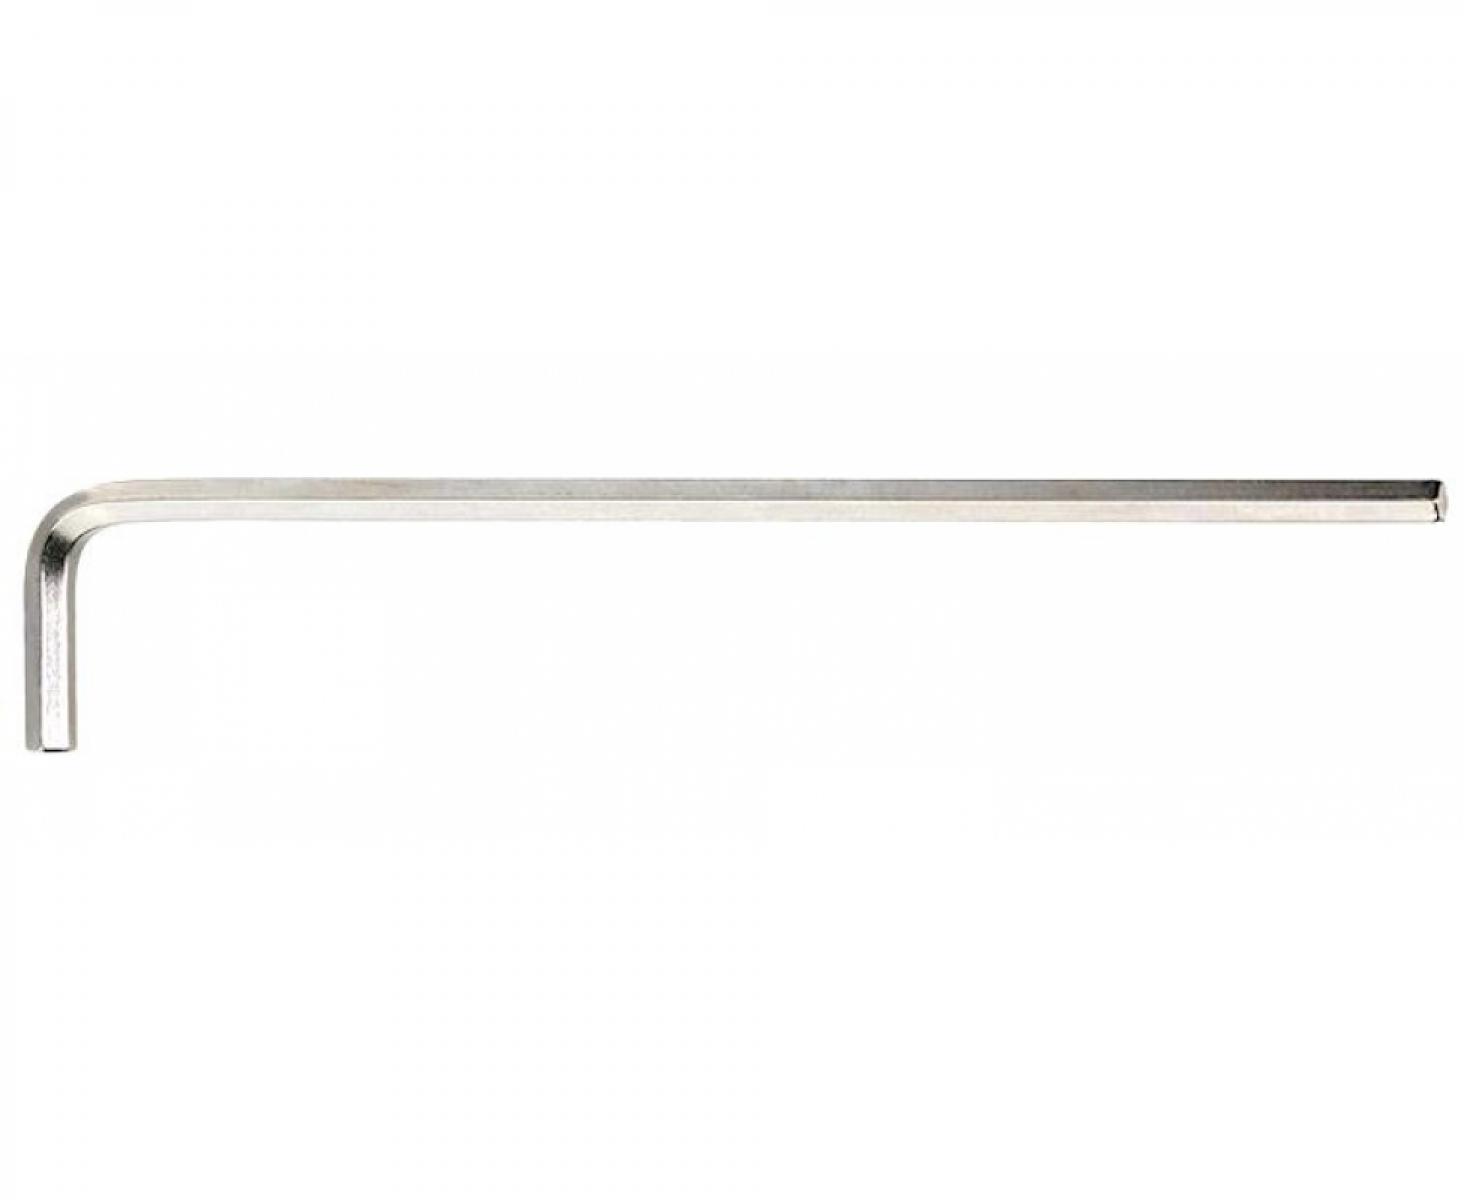 Штифтовый ключ HEX 17 мм длинный, метрический, никелированный 10765 Stahlwille 43210017